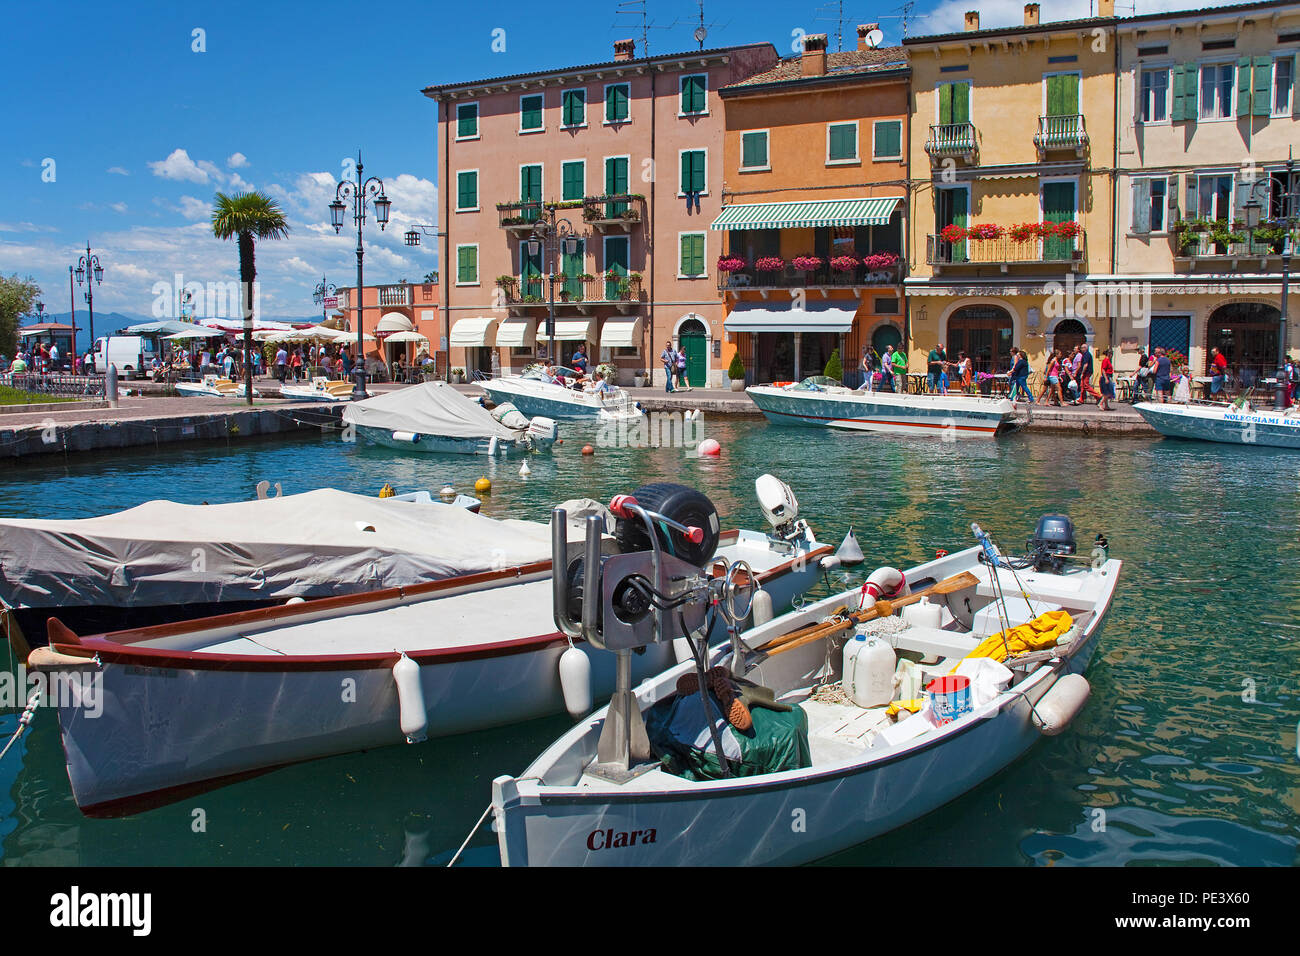 Fischerboote im Hafen von Lazise, Gardasee, Provinz Verona, Italien | Fisching boats at the harbour of Lazise, Garda lake, province Verona, Italy Stock Photo